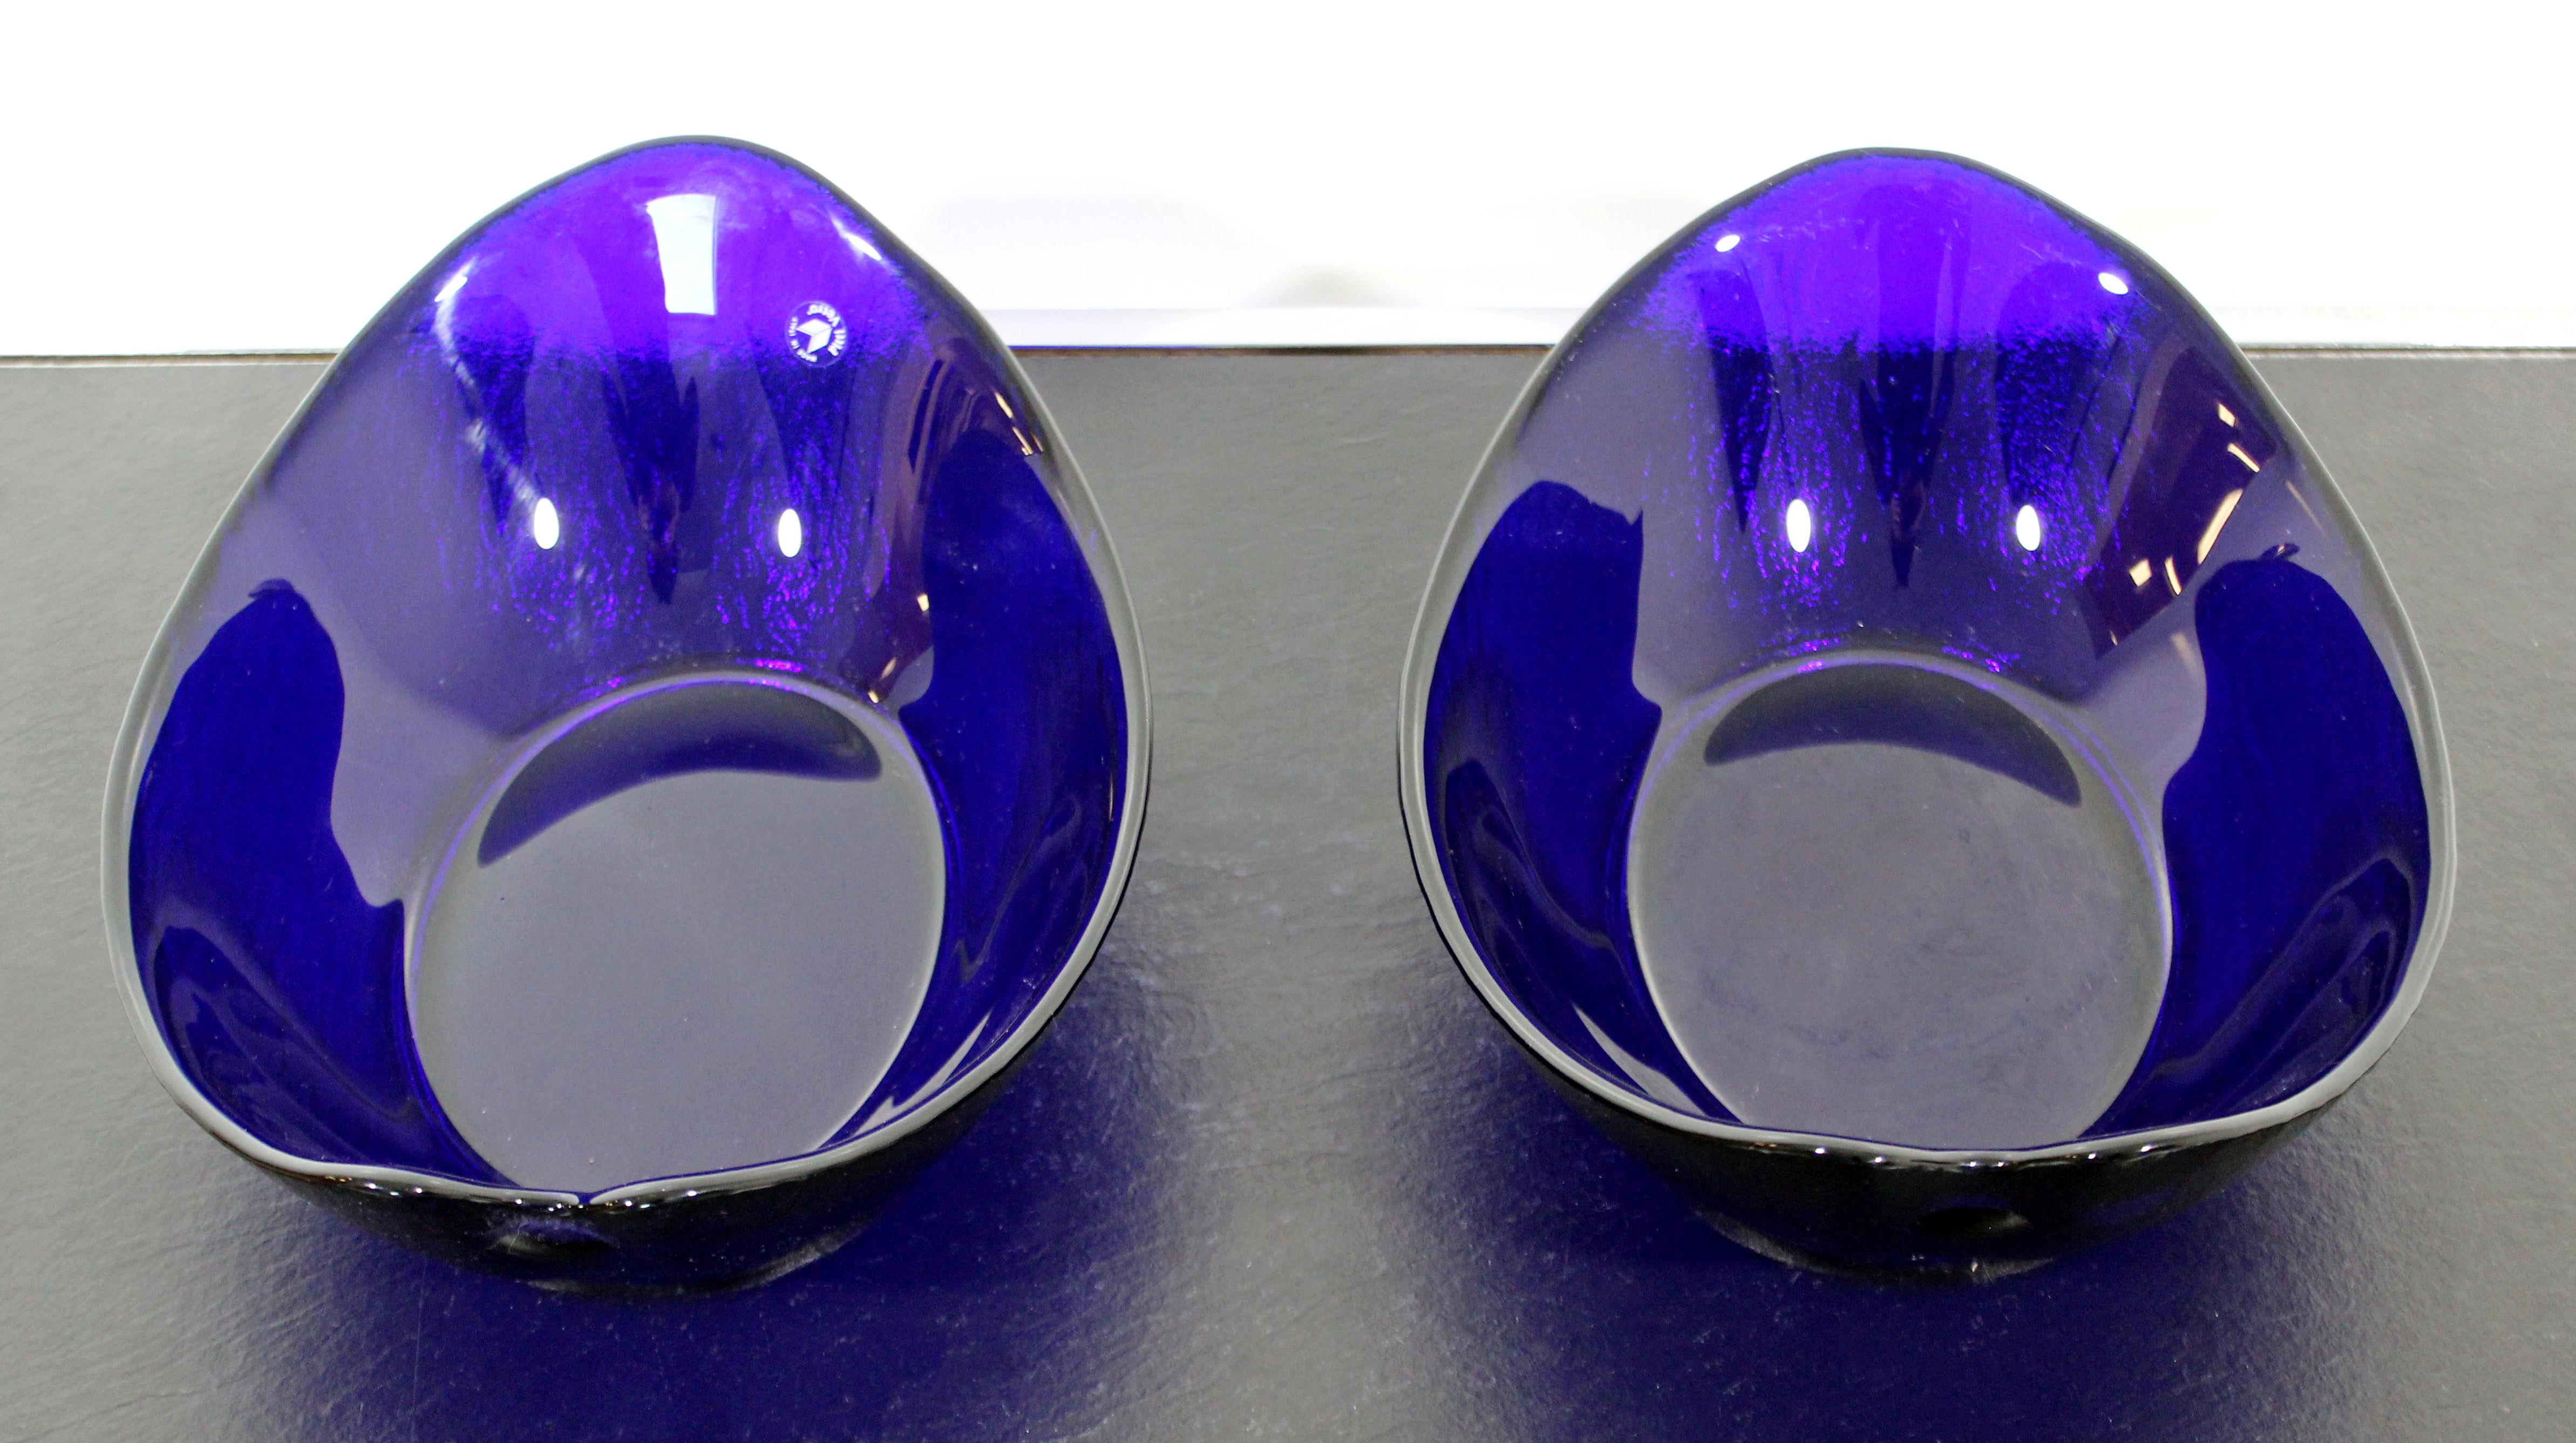 Late 20th Century Mid-Century Modern Pair of Pitti Vetro Cobalt Murano Glass Bowls 1970s Italian